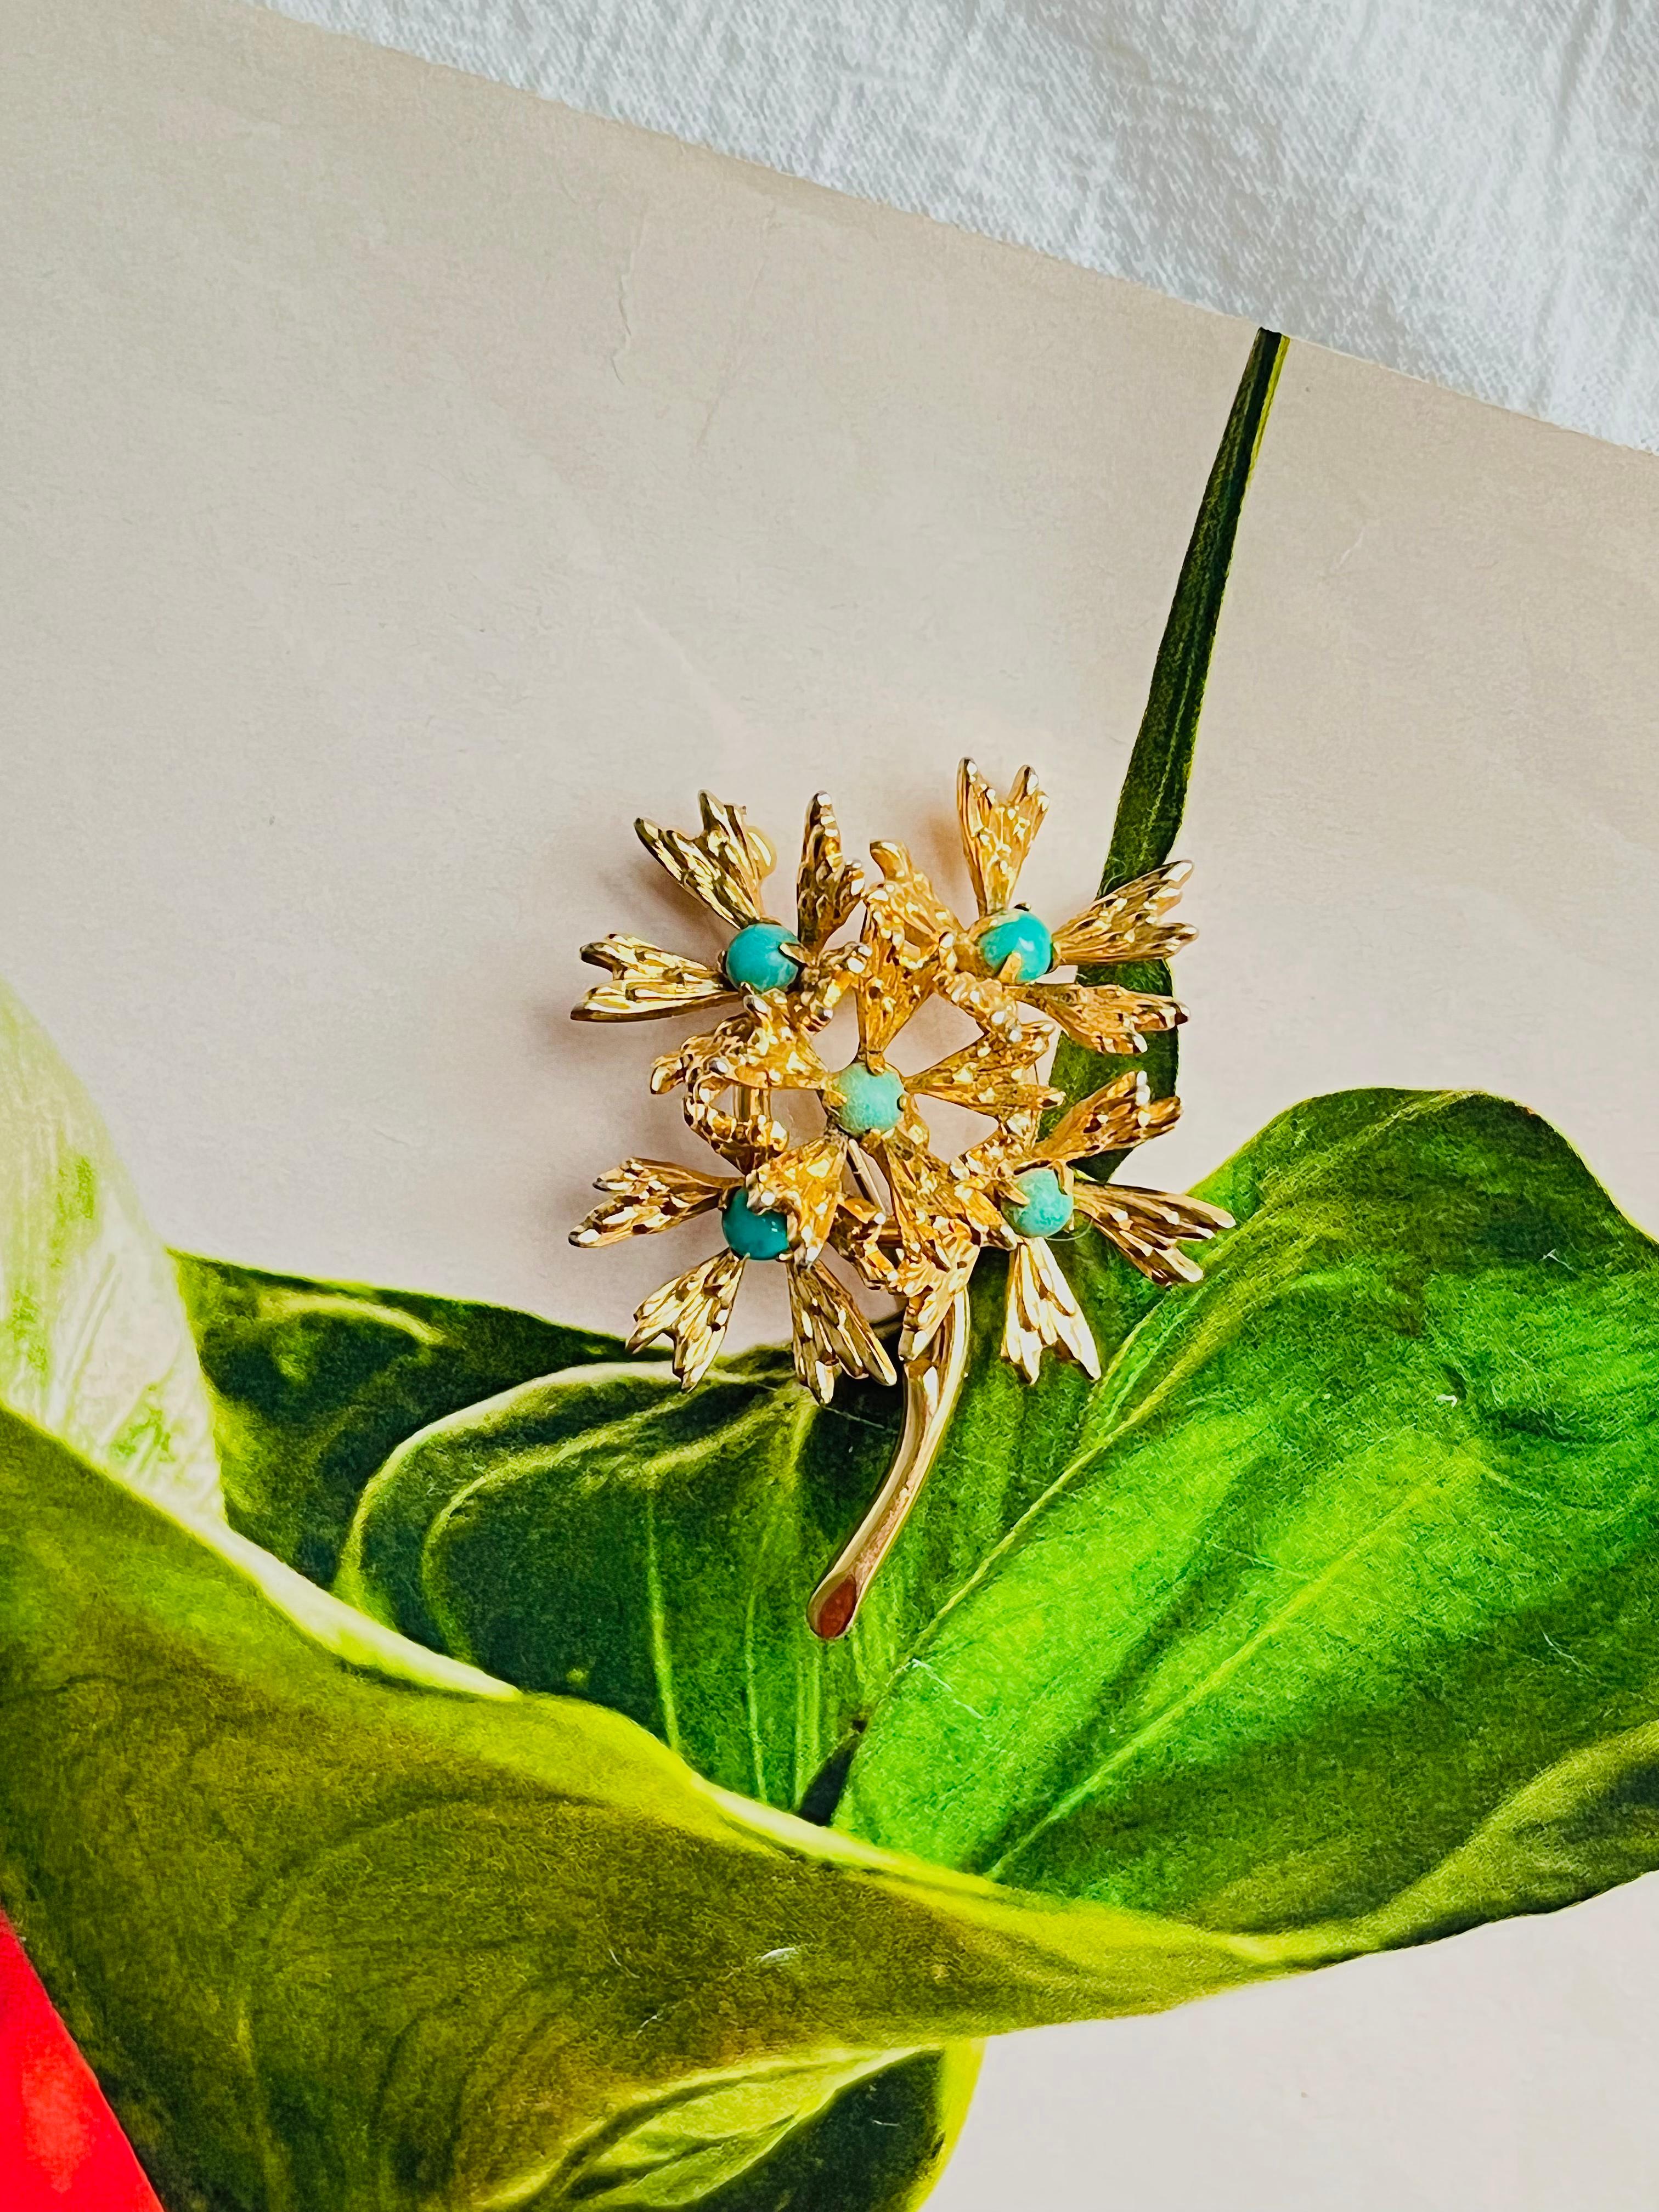 Christian Dior GROSSE 1965 Türkis Stein Cluster Blumenstrauß Brosche, Gold-Ton

Sehr guter Zustand. Leichte Kratzer oder Farbverluste, kaum wahrnehmbar.

Signiert auf der Rückseite. Selten zu finden. 100% echt.

Größe: 5,0 cm x 4,0 cm.

Gewicht: